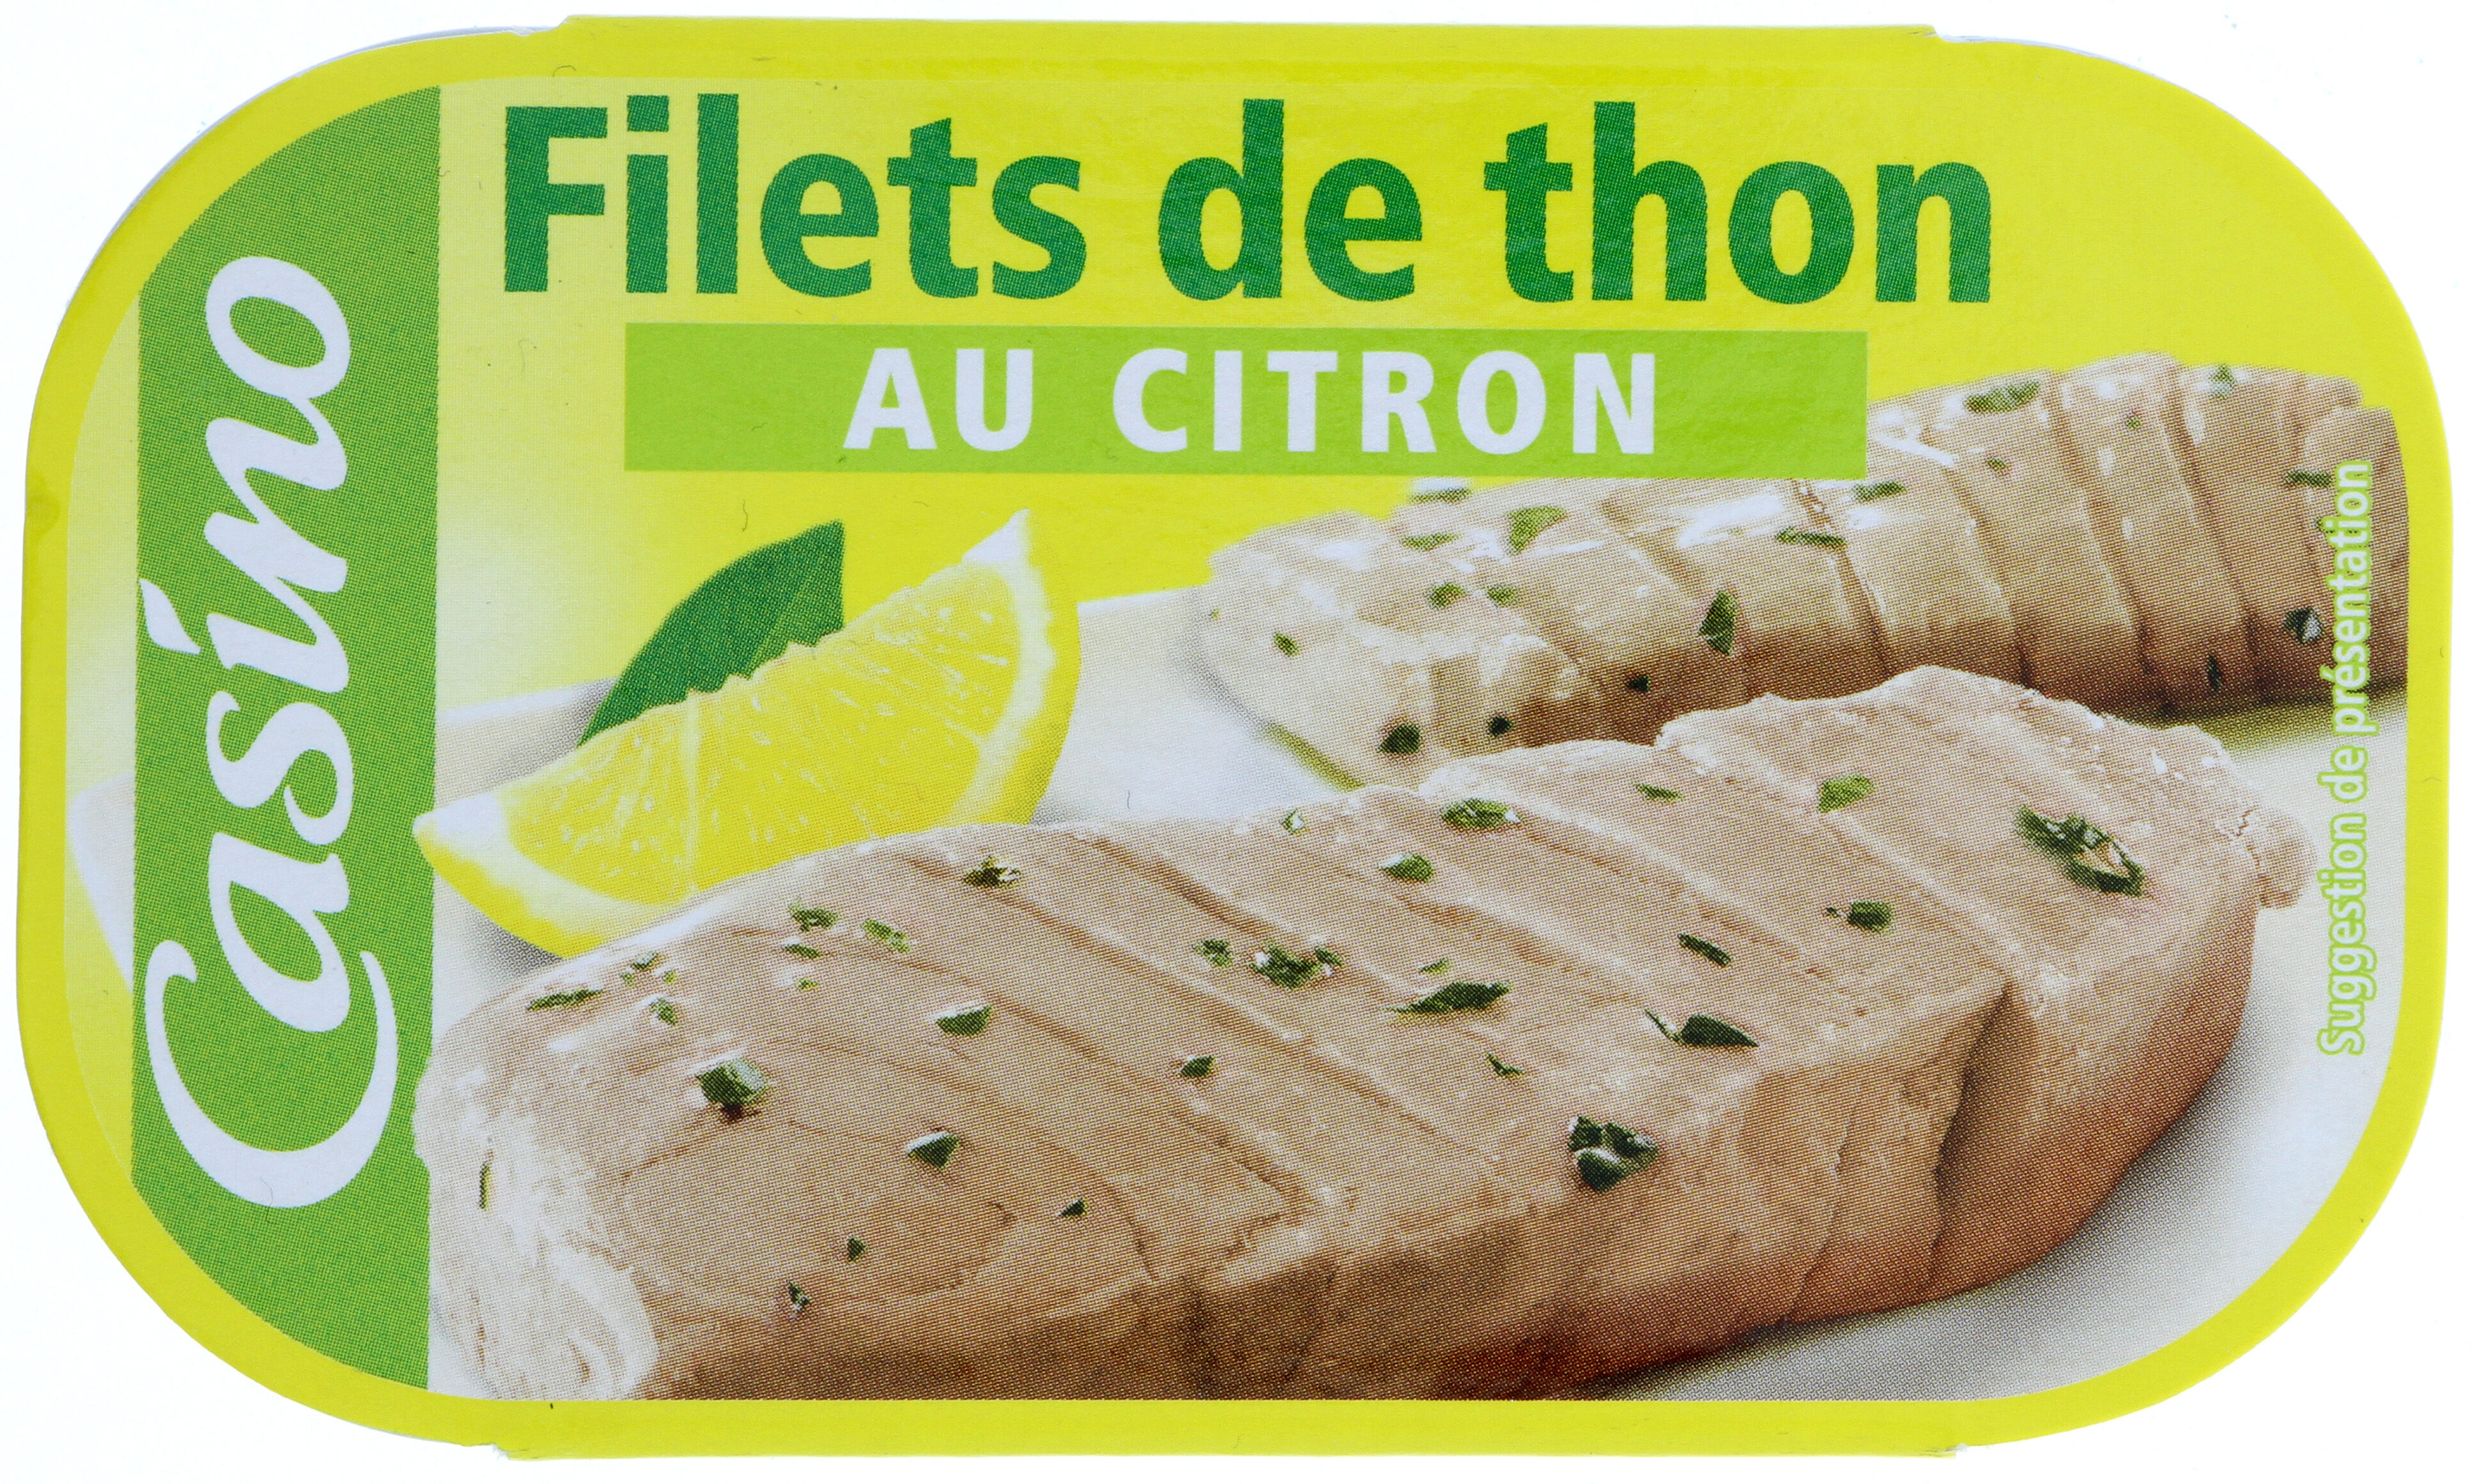 Filets de thon au citron - Producto - fr